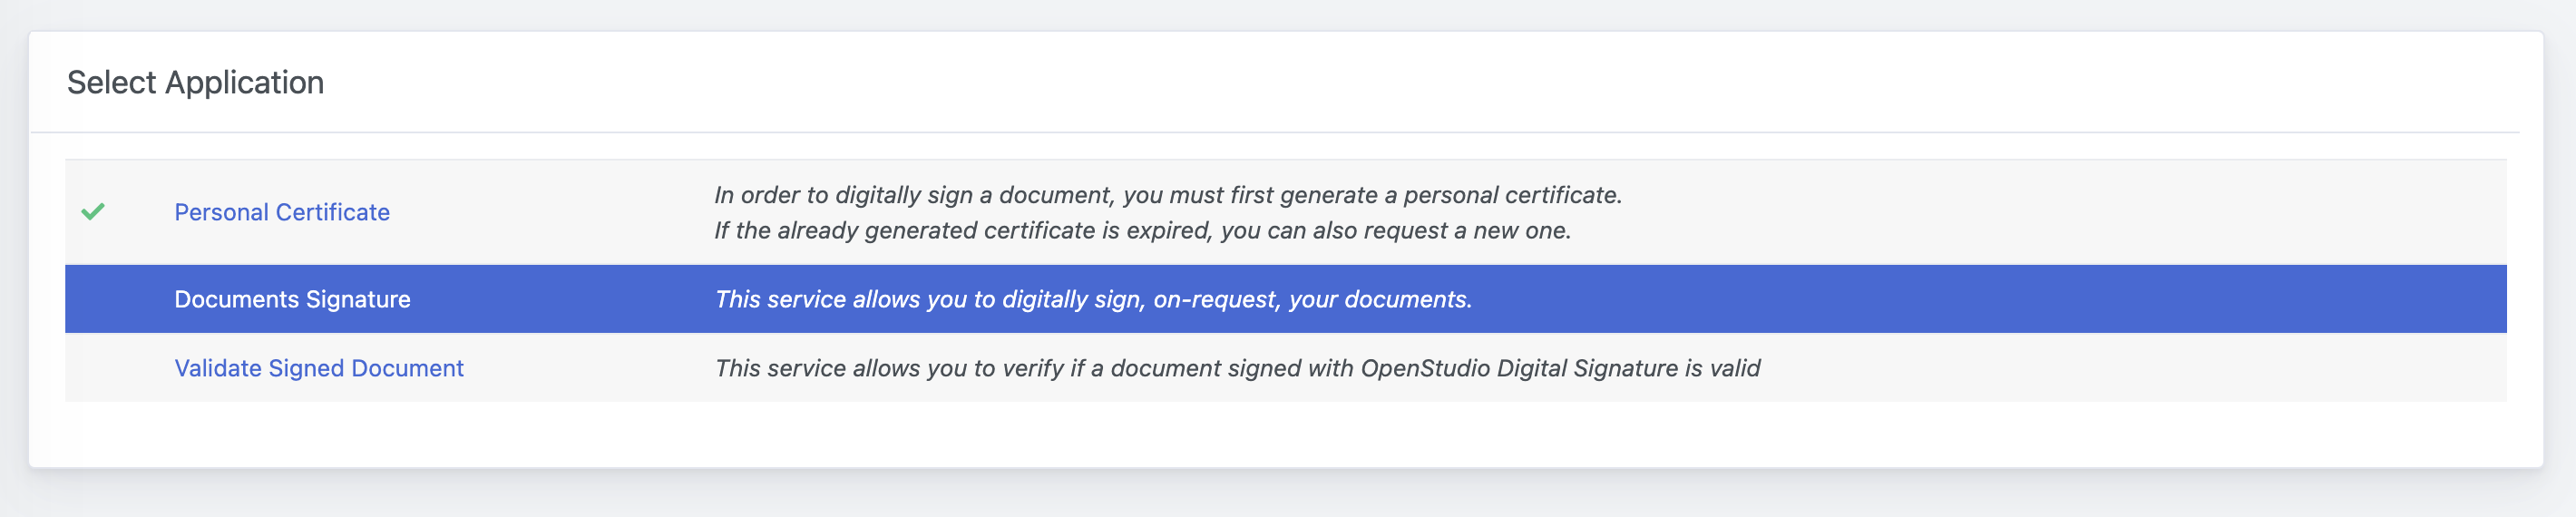 OpenStudio - Digital Signature - Select Documents Signature